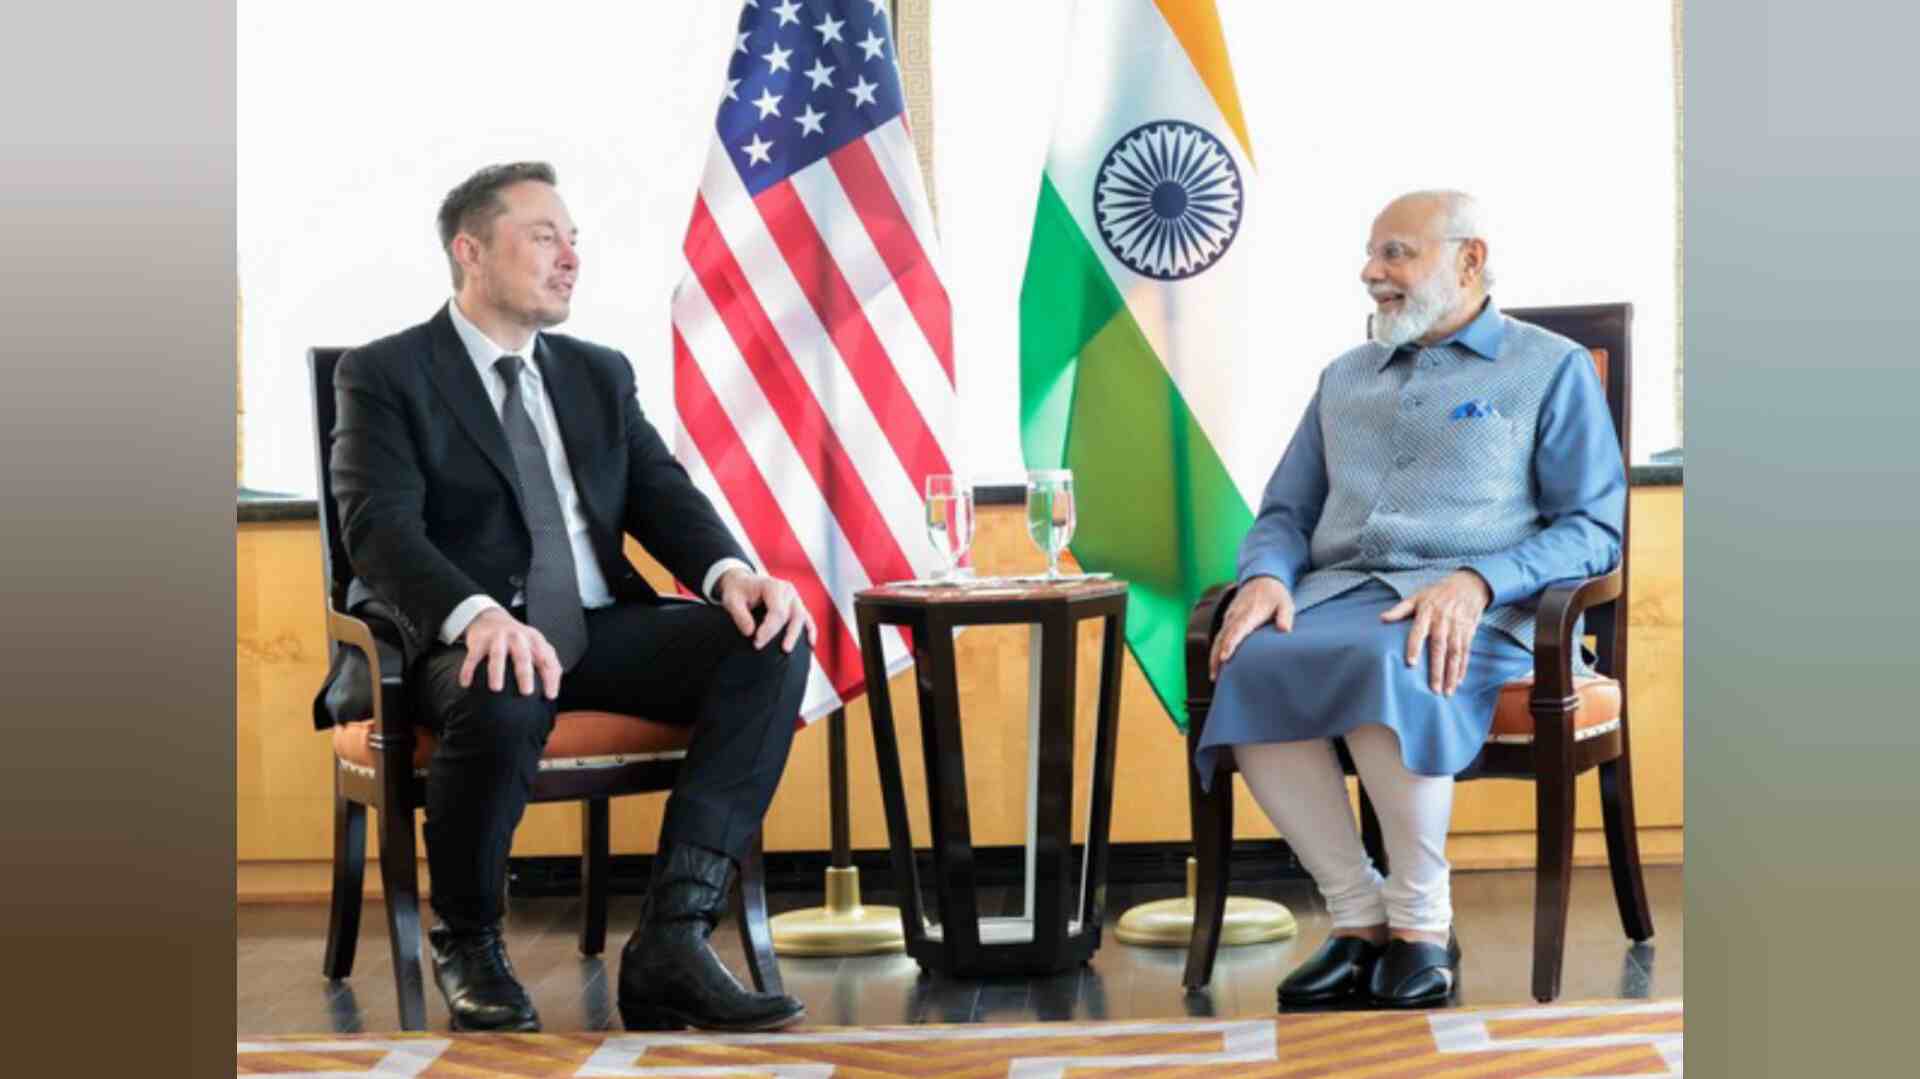 प्रधानमंत्री नरेंद्र मोदी से मुलाकात को लेकर उत्साहित हूं: भारत यात्रा का ऐलान करते हुए एलन मस्क